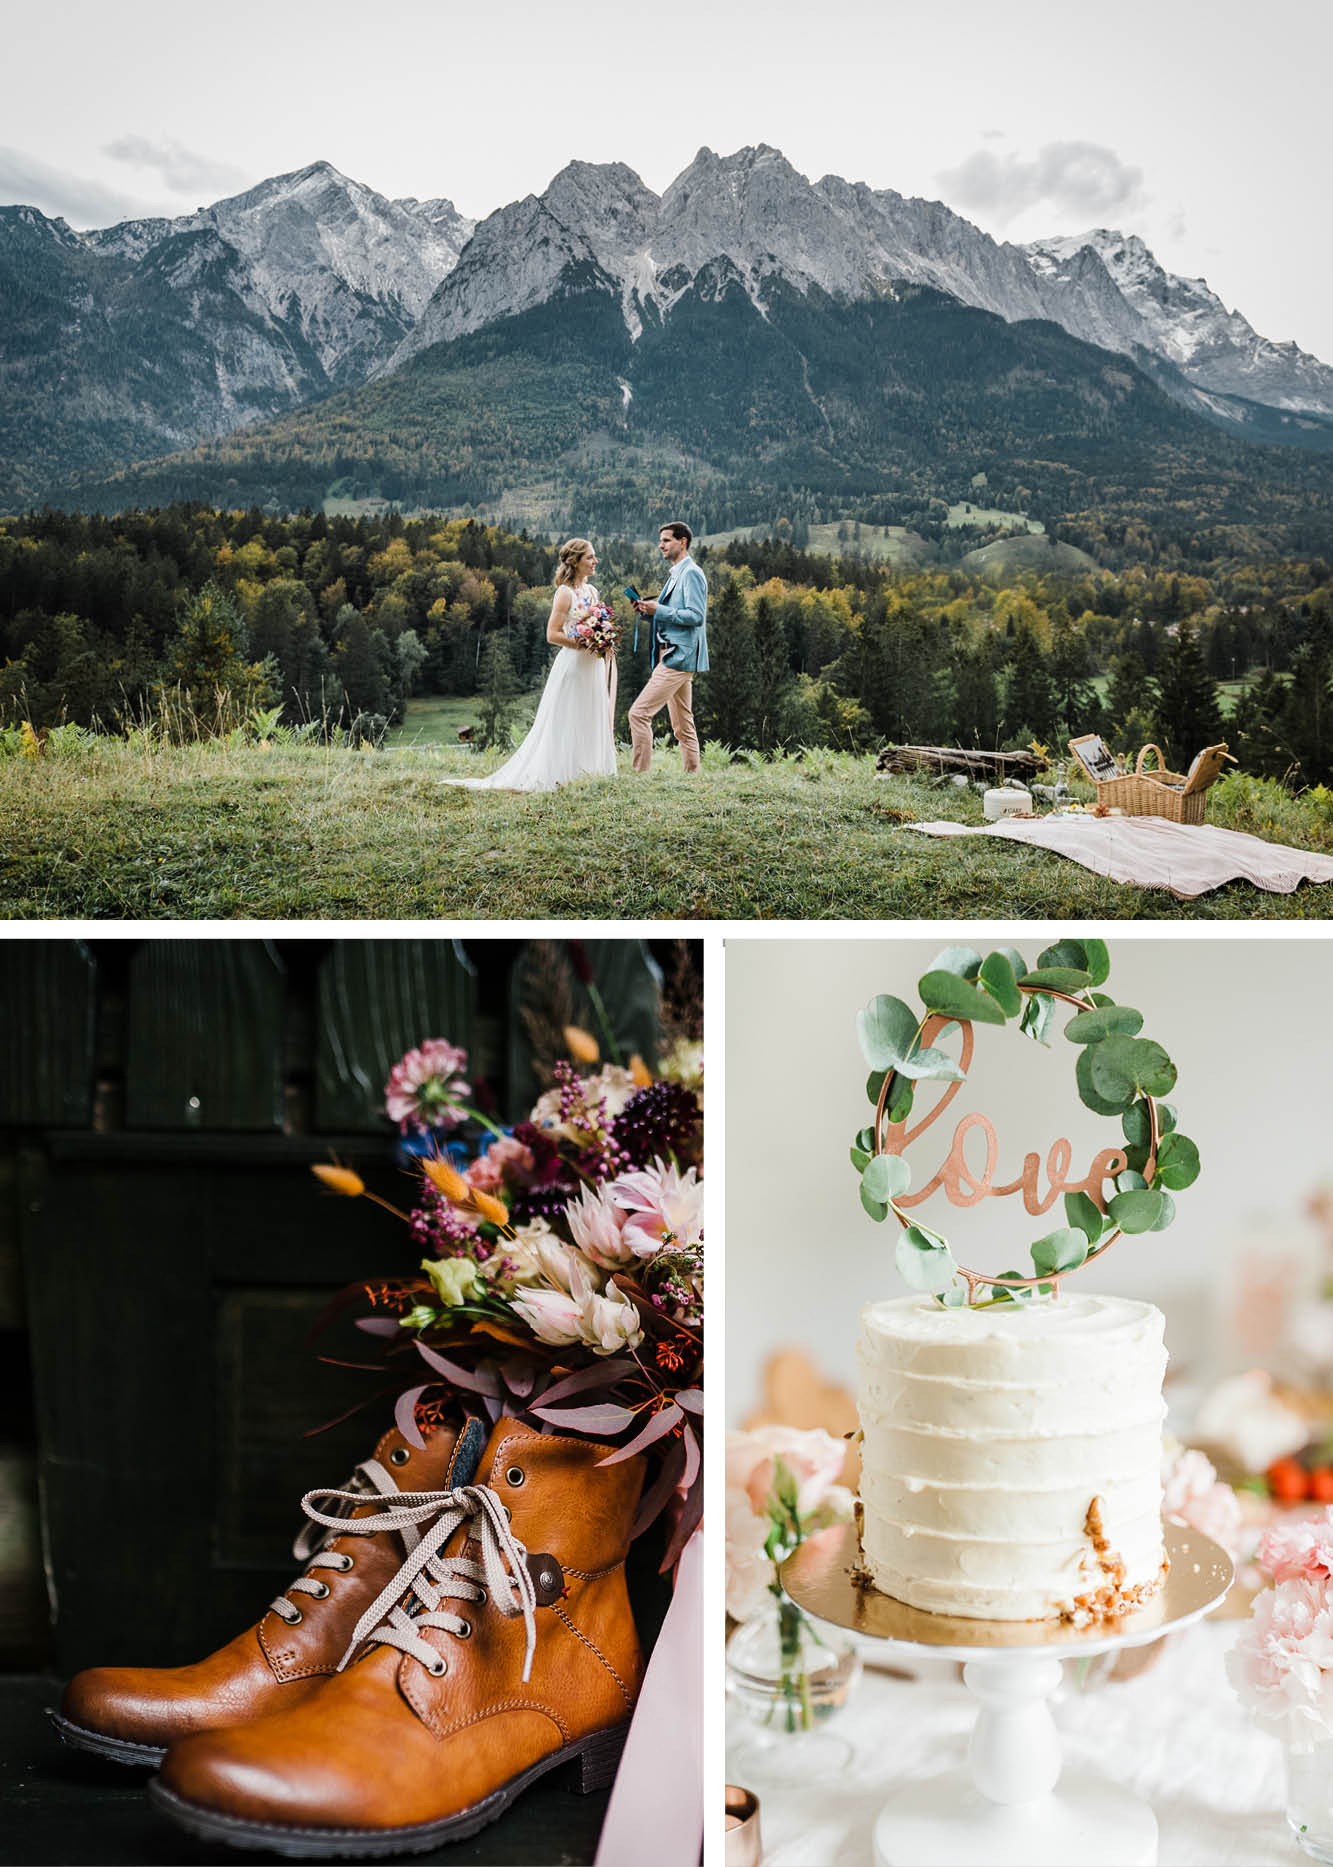 Hochzeit in den Bergen, Elopement, Dekoration,Schuhe, Hochzeitstorte